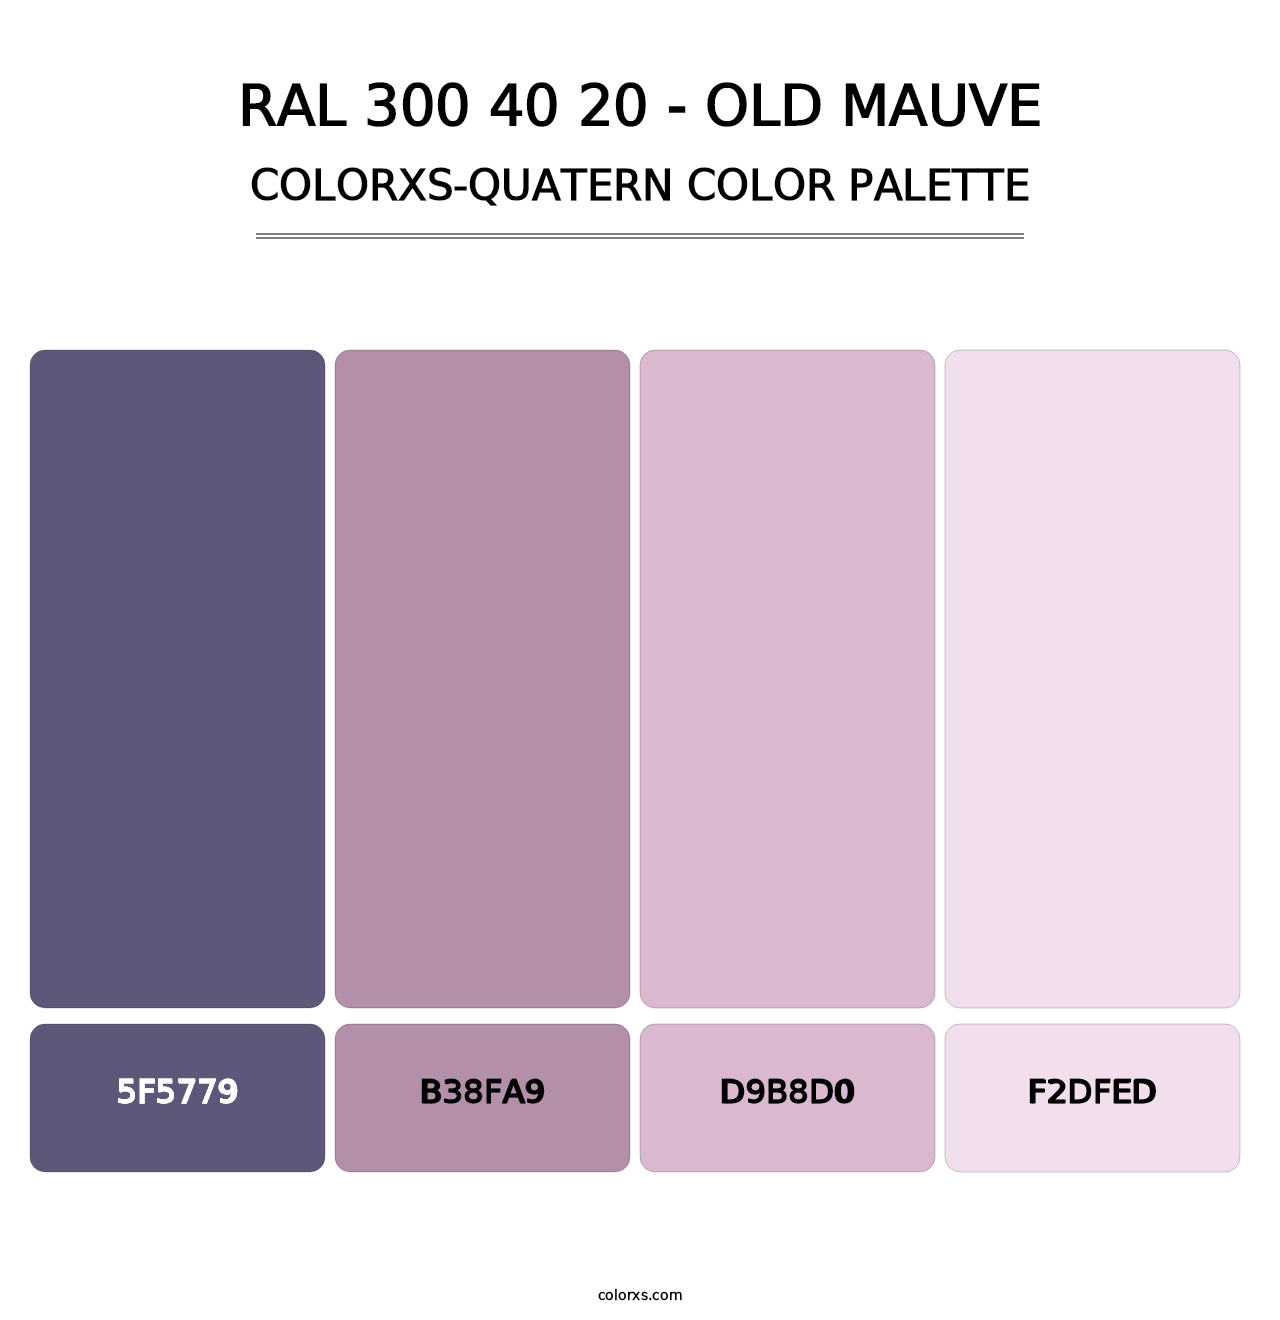 RAL 300 40 20 - Old Mauve - Colorxs Quatern Palette